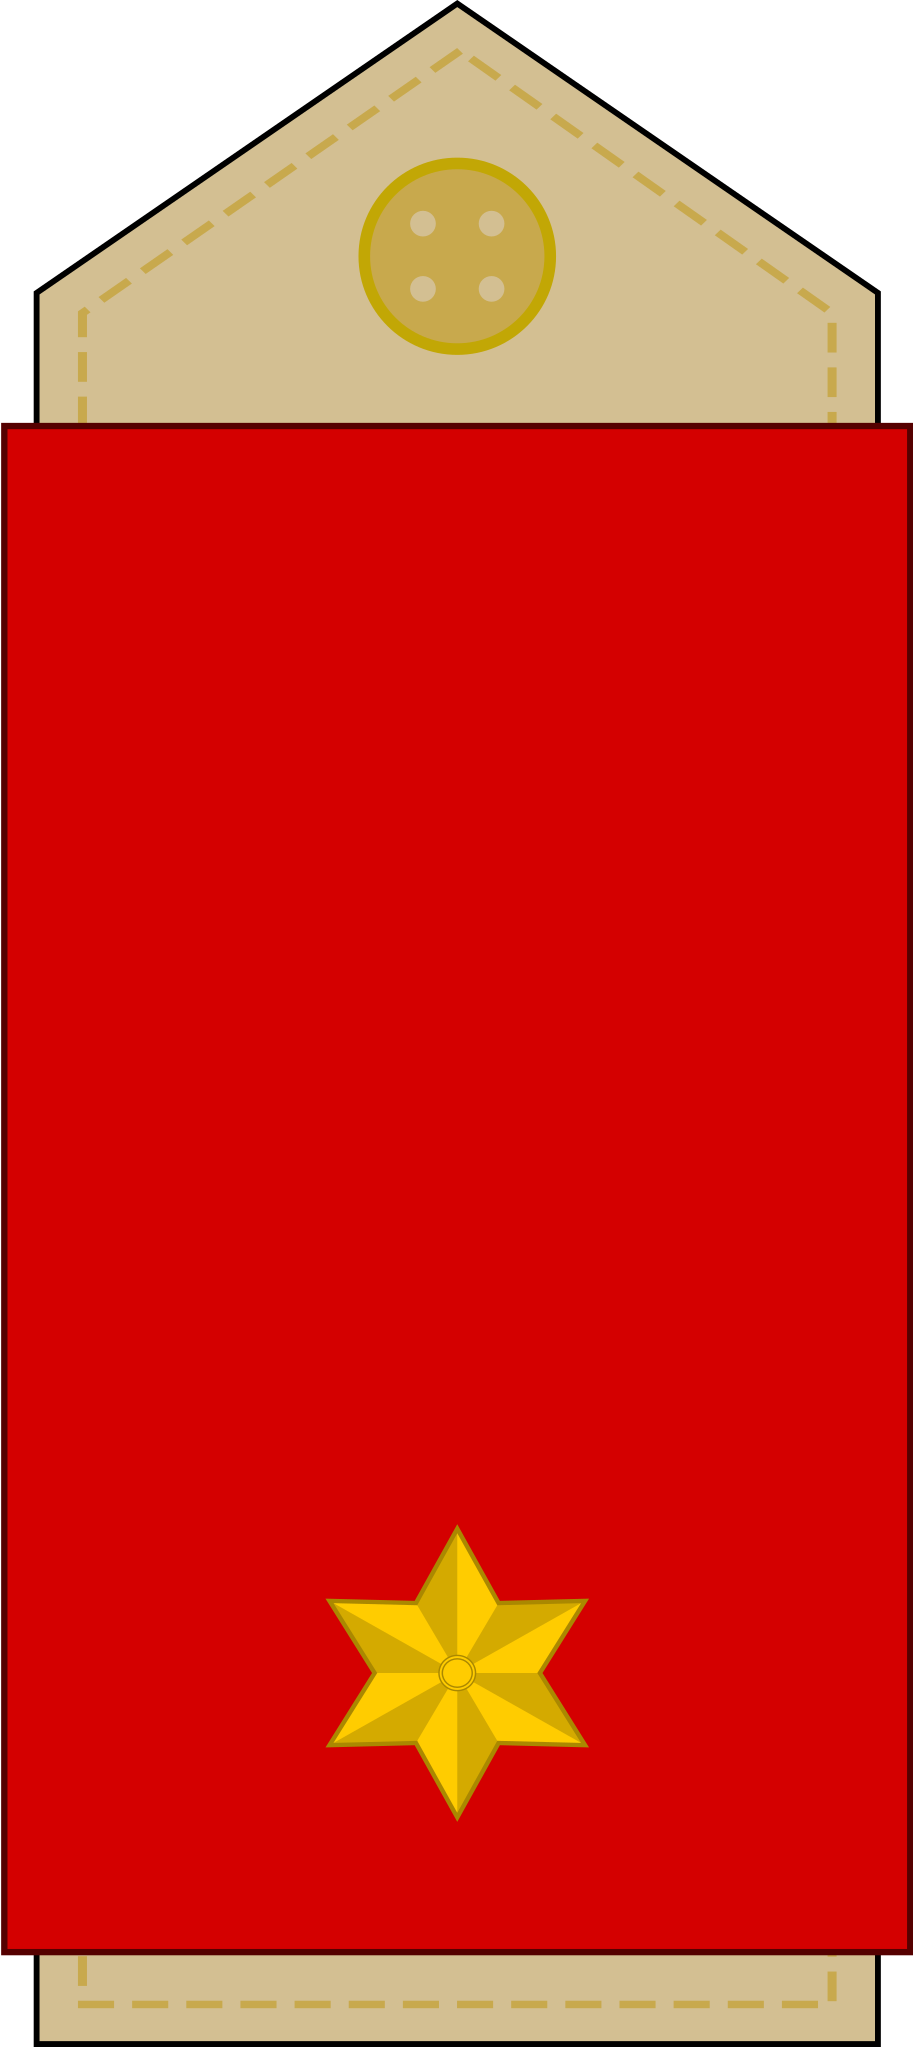 Red envelope - Wikipedia